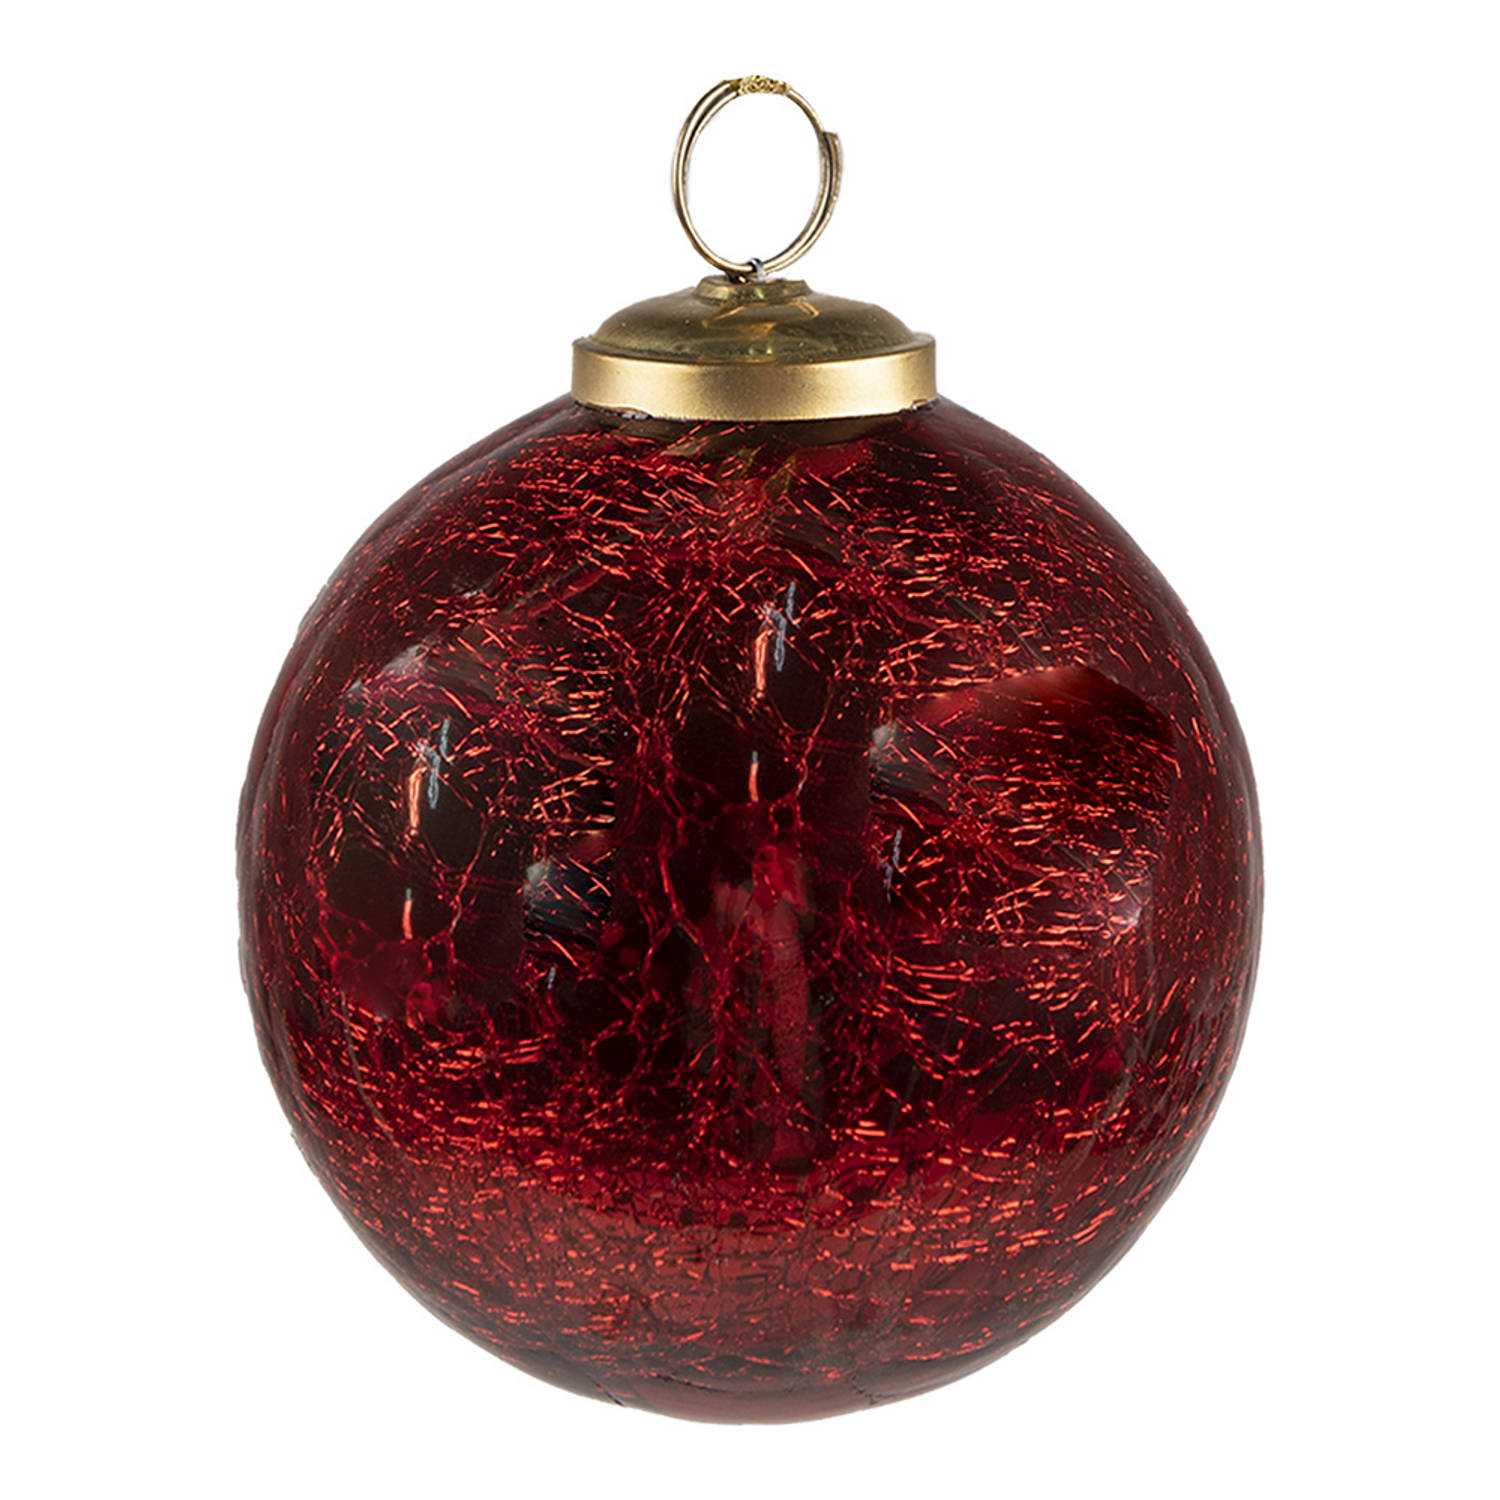 HAES DECO - Kerstbal - Formaat Ø 7x8 cm - Kleur Rood - Materiaal Glas - Kerstversiering, Kerstdecoratie, Decoratie Hanger, Kerstboomversiering